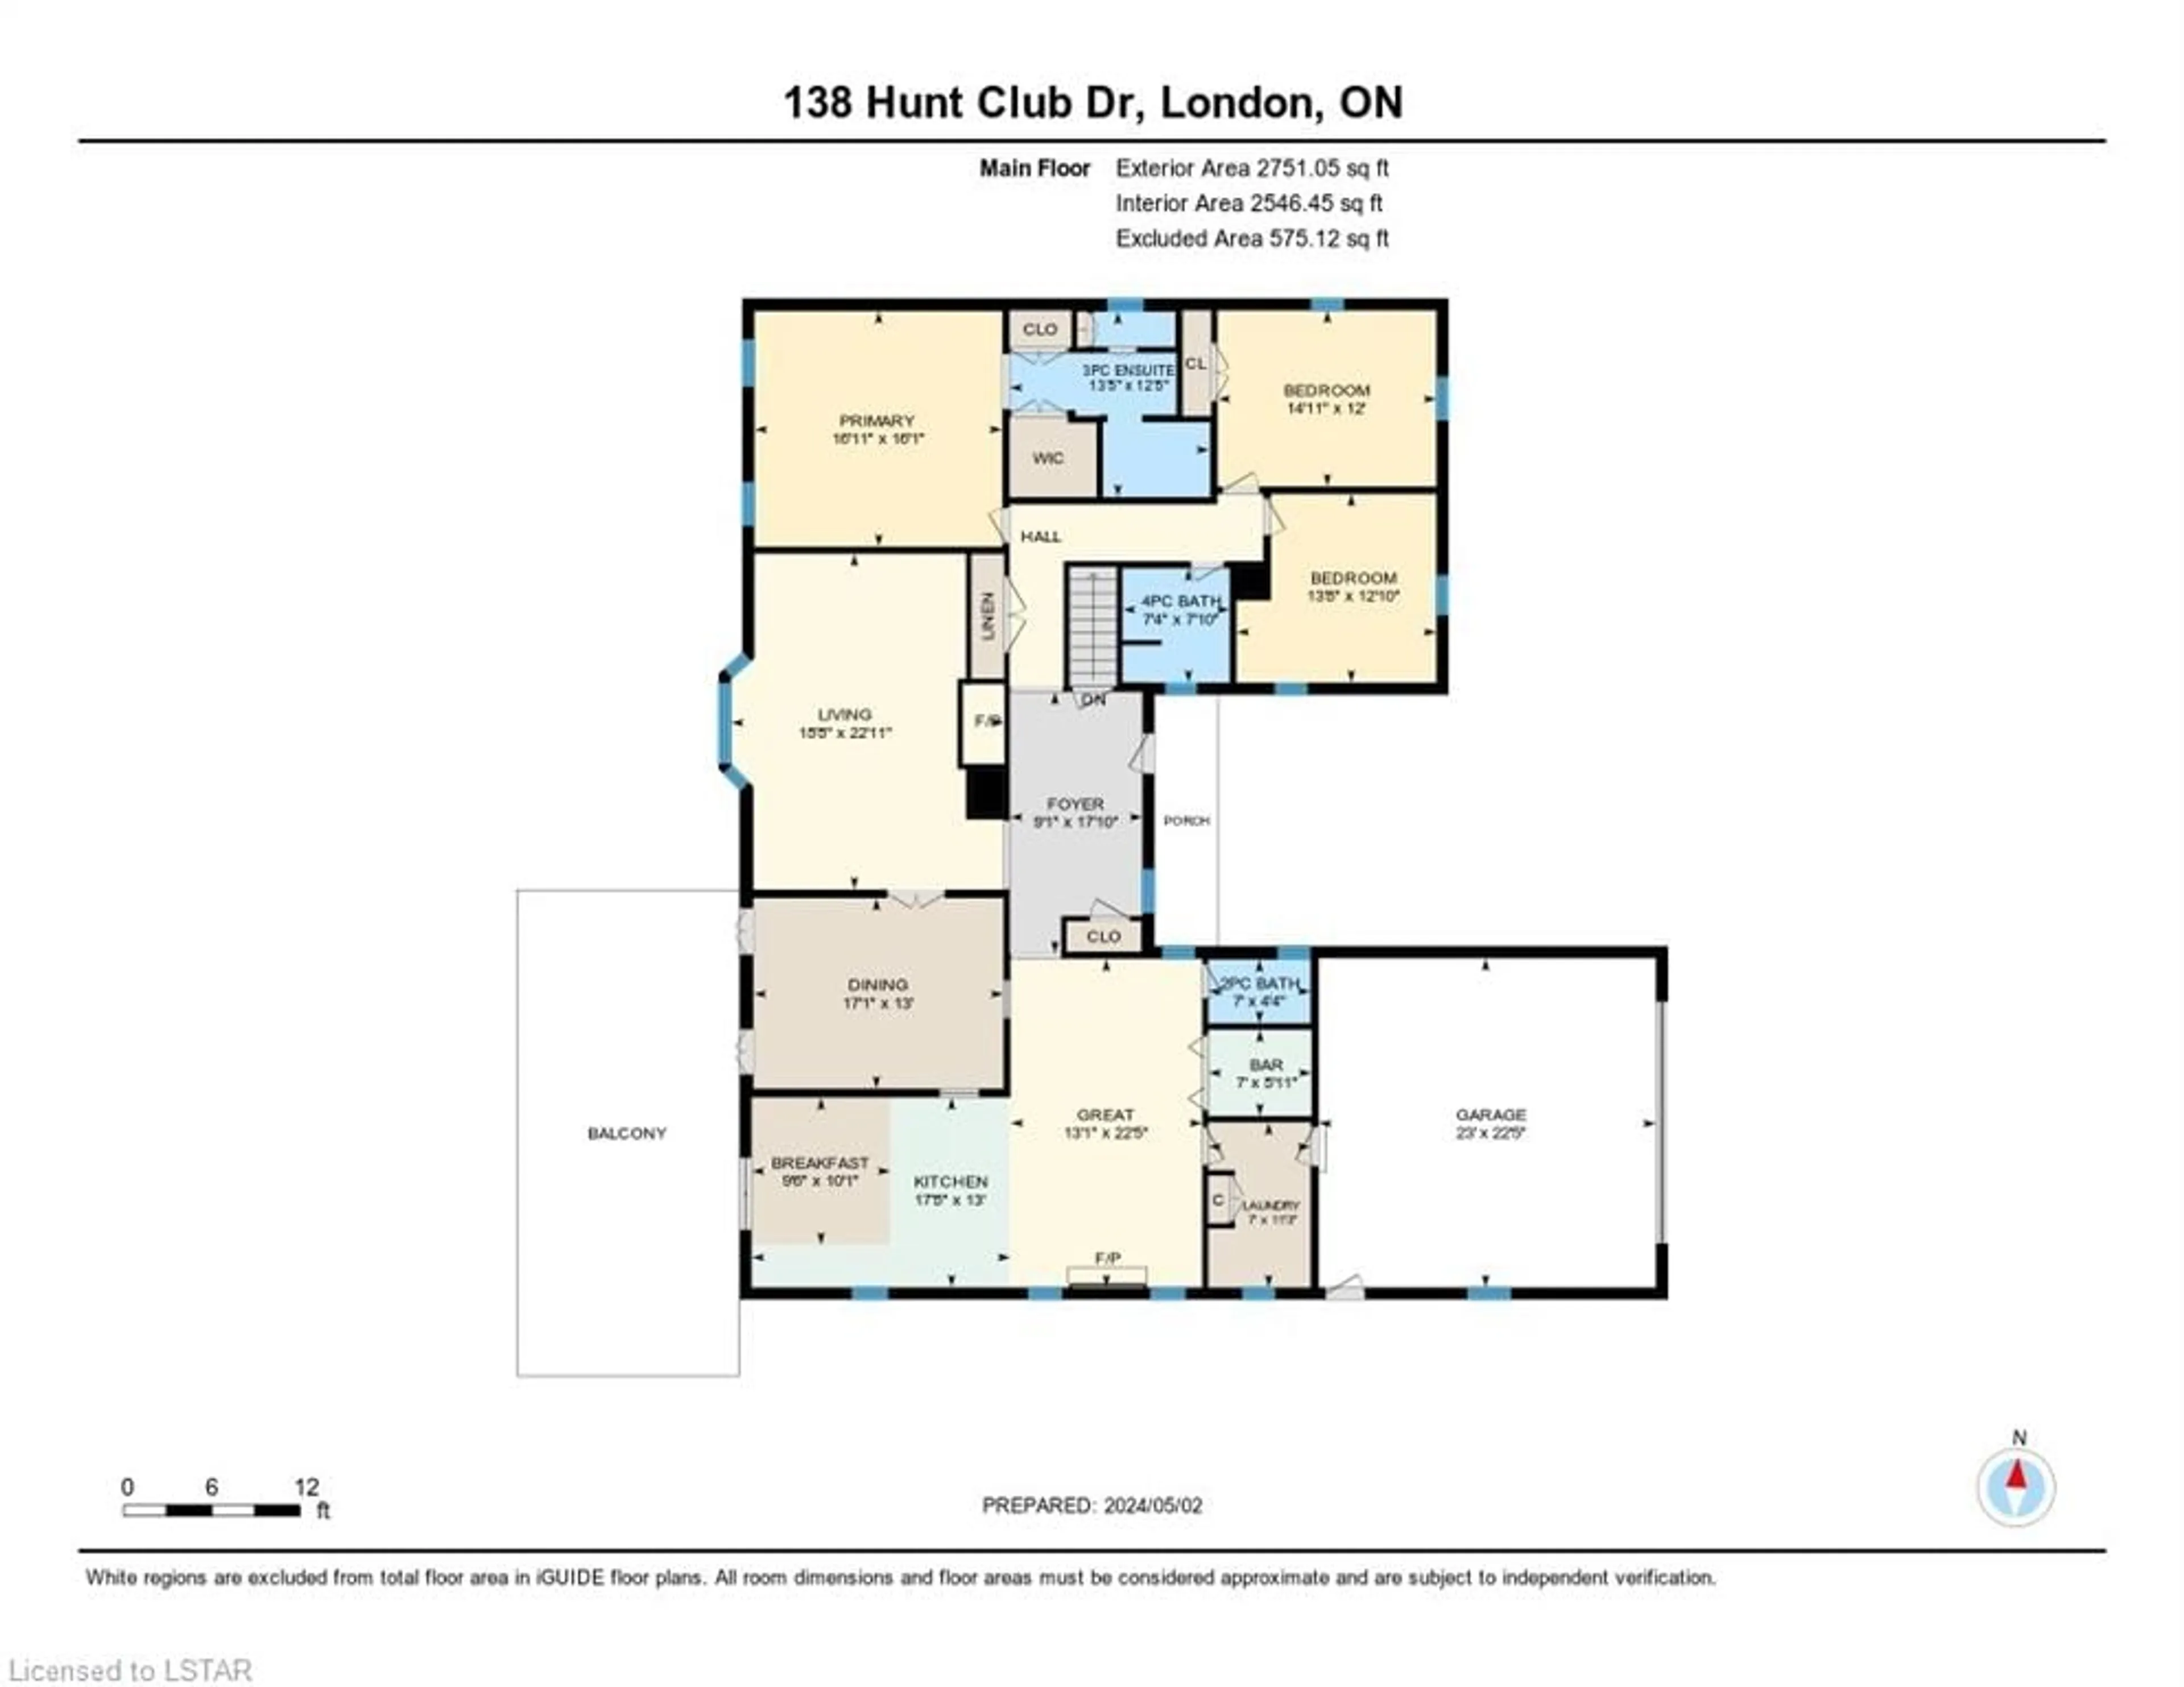 Floor plan for 138 Hunt Club Dr, London Ontario N6H 3Y7